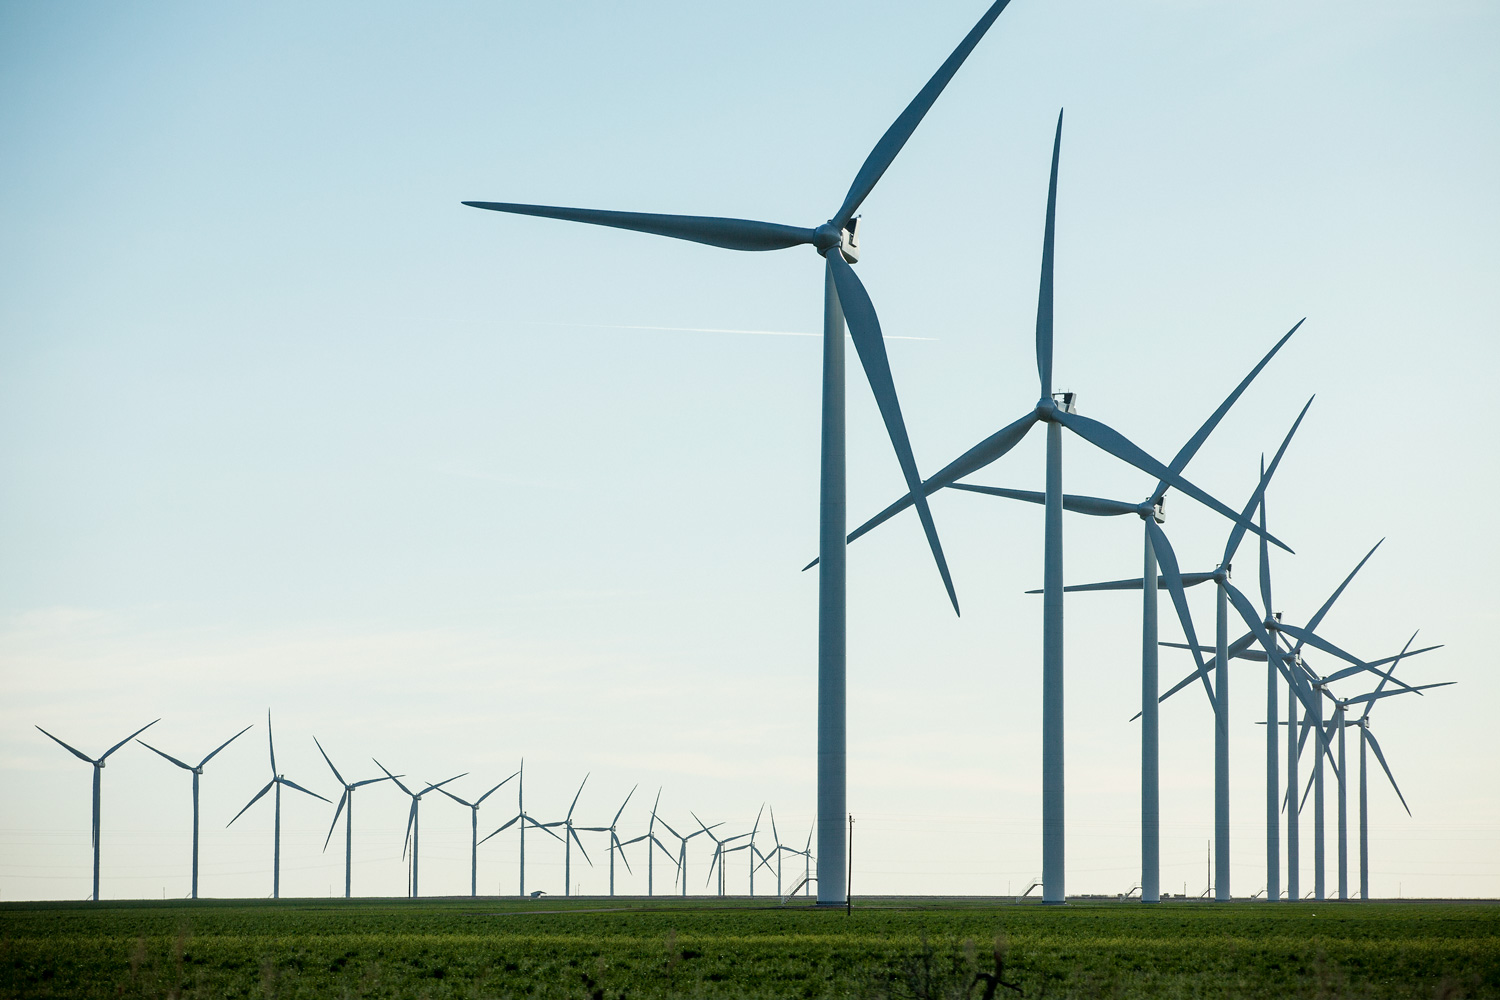 Vestas Wind Systems – dänischer Windenergie-Gigant mit starkem Gegenbeispiel zum Siemens-Energy-Desaster